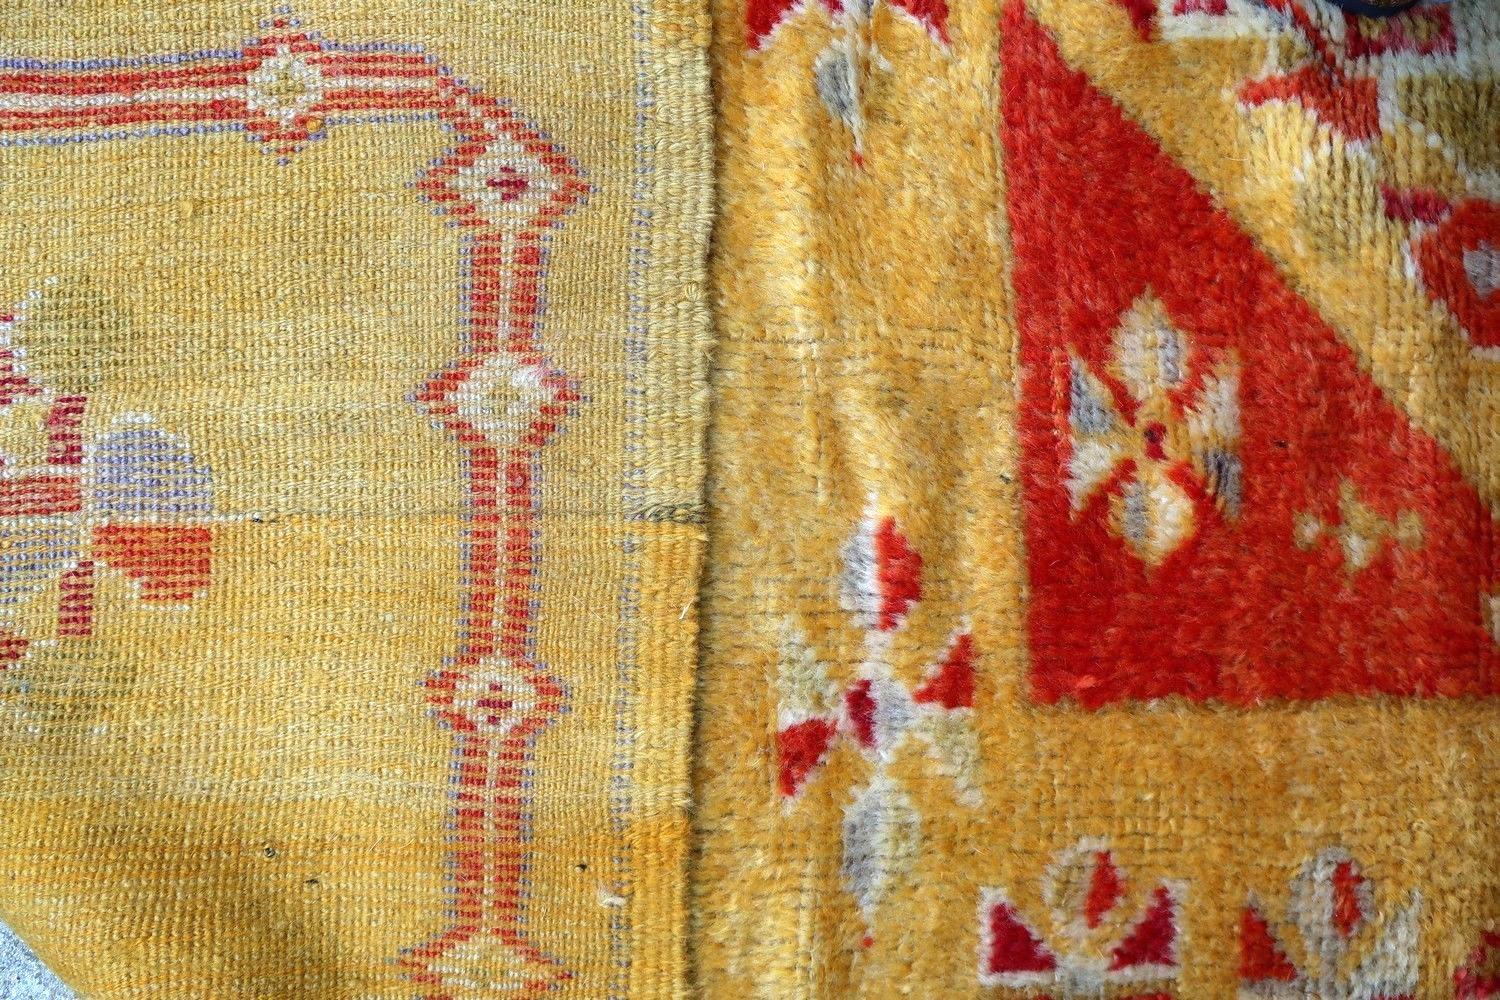 Antiker handgefertigter marokkanischer Teppich in gutem Originalzustand und gelber Farbe. Der Teppich stammt aus dem Anfang des 20. Jahrhunderts und ist aus Wolle gefertigt.

-zustand: original gut,

-um: 1920er Jahre,

-größe: 4,4' x 7,4'